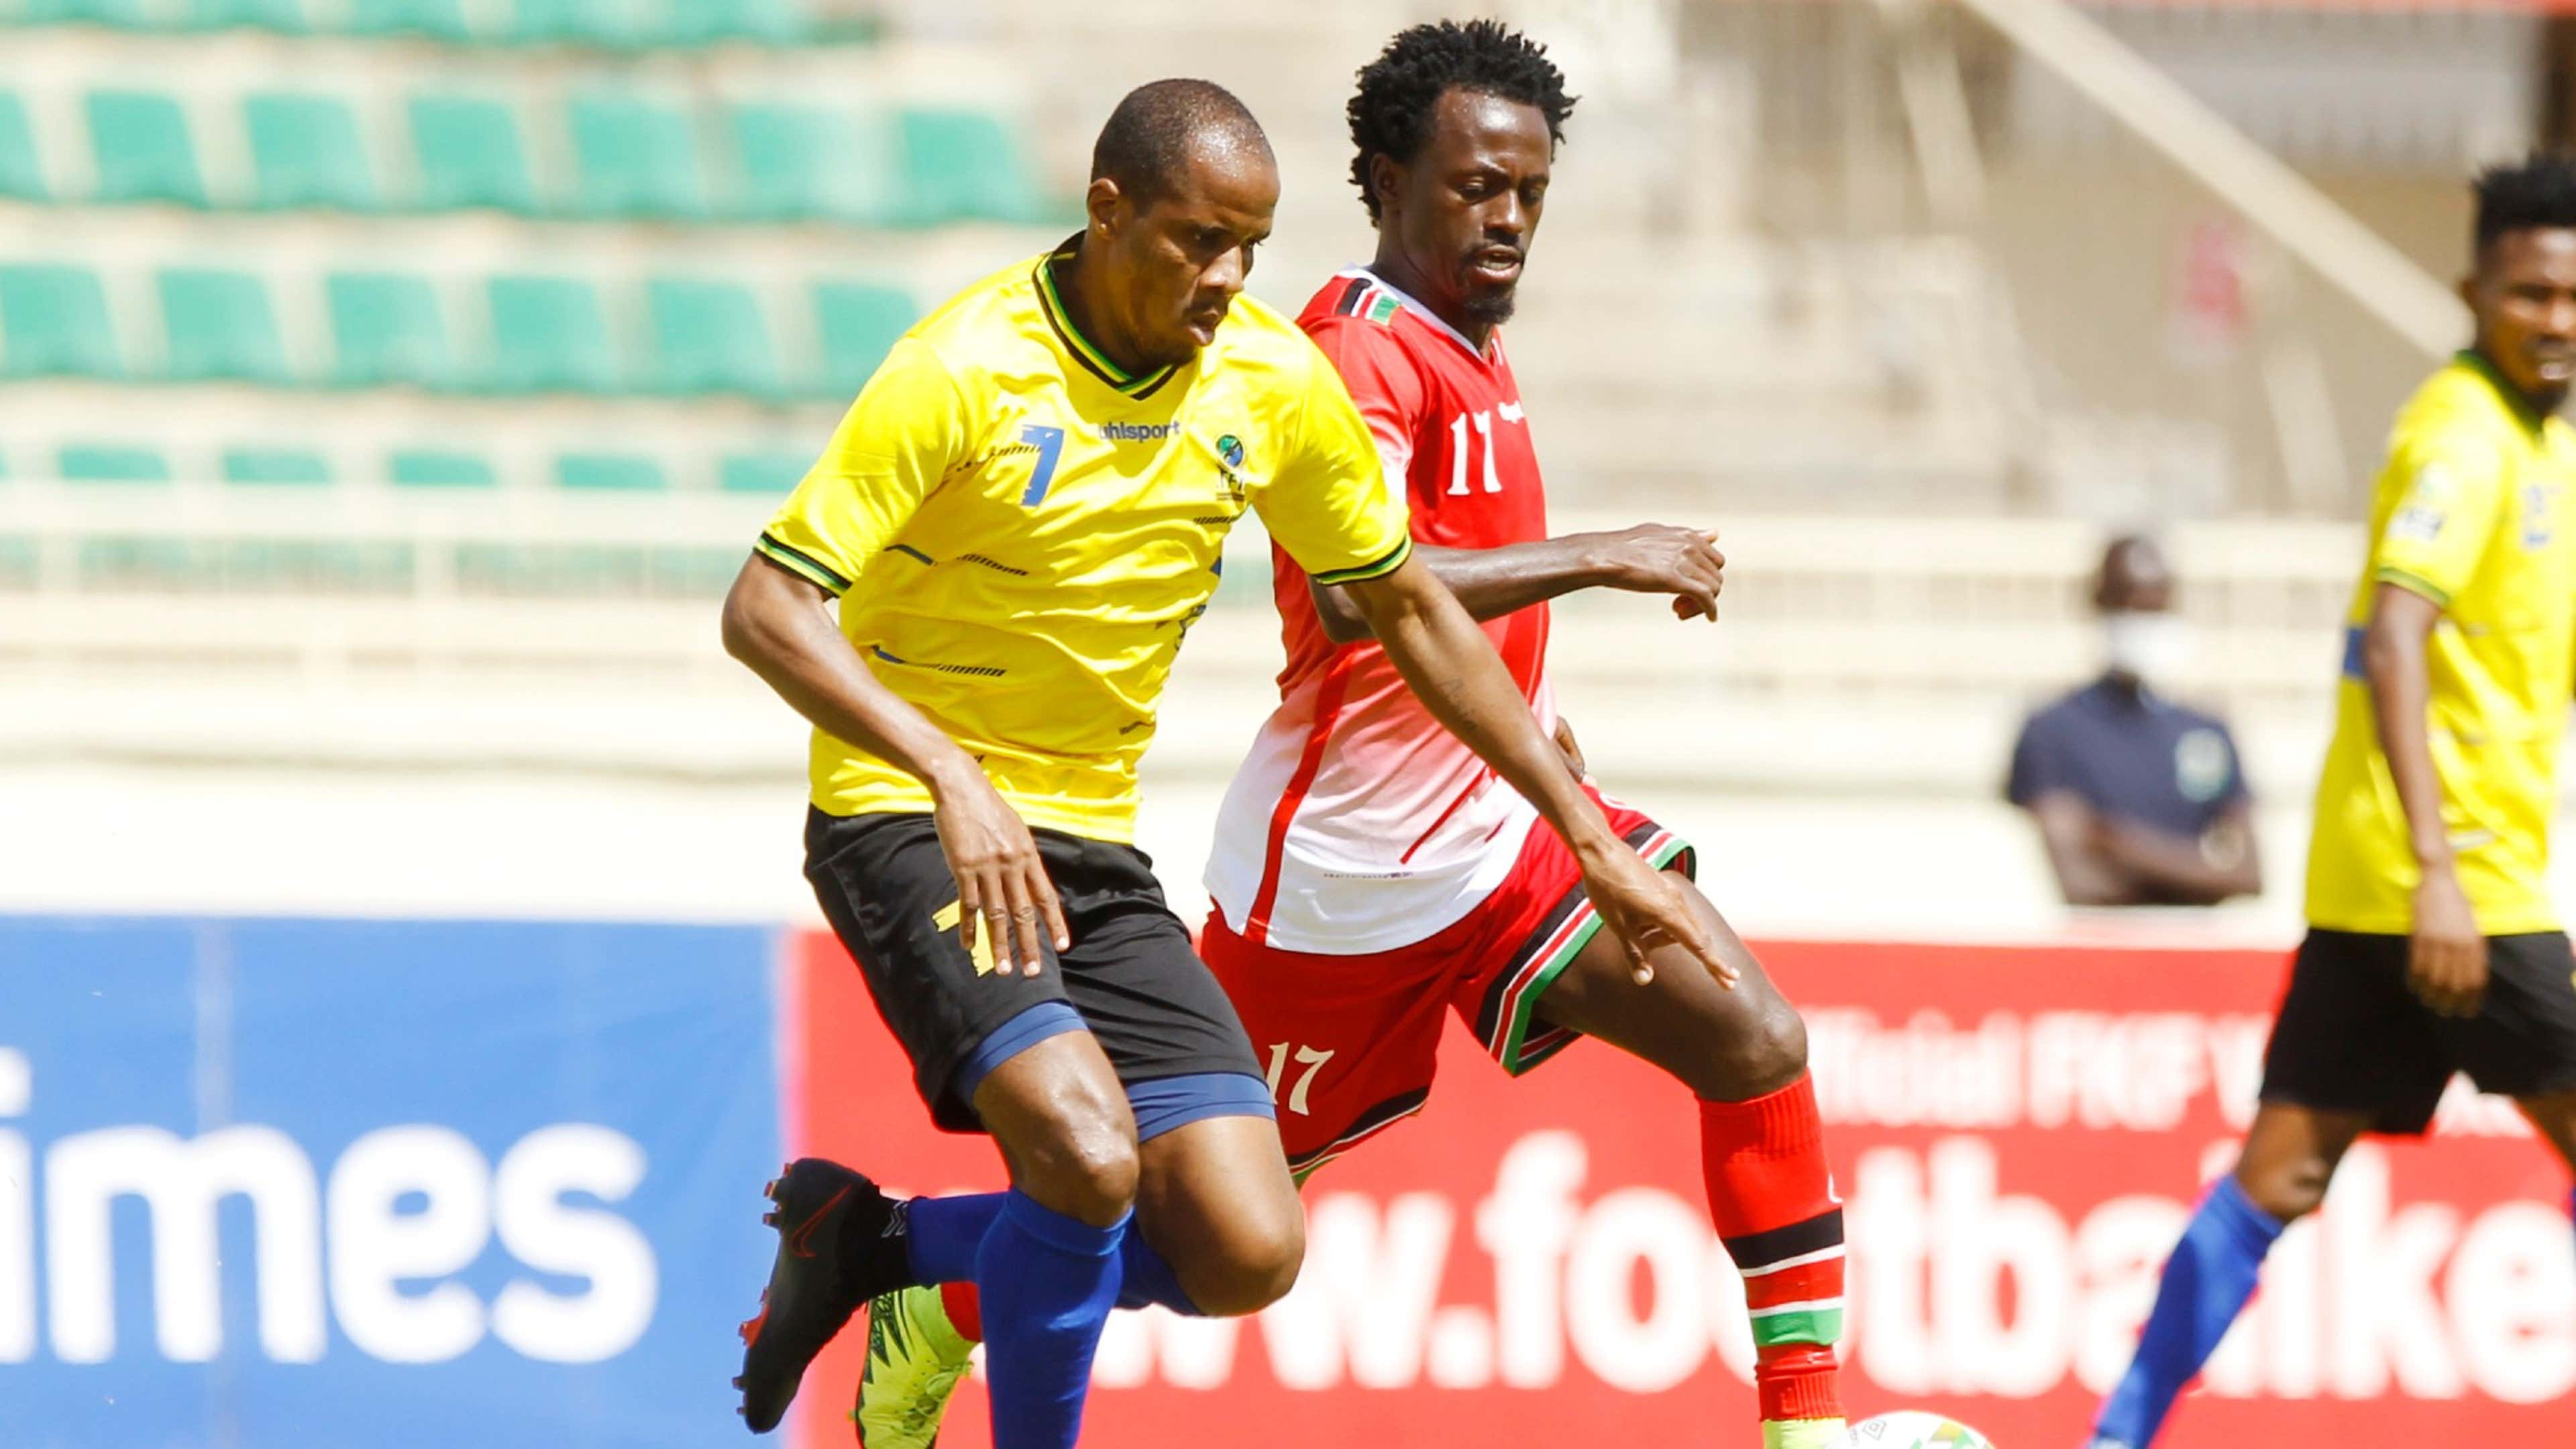 Himid Mao of Tanzania vs Kenya and Harambee Stars Kevin Kimani.